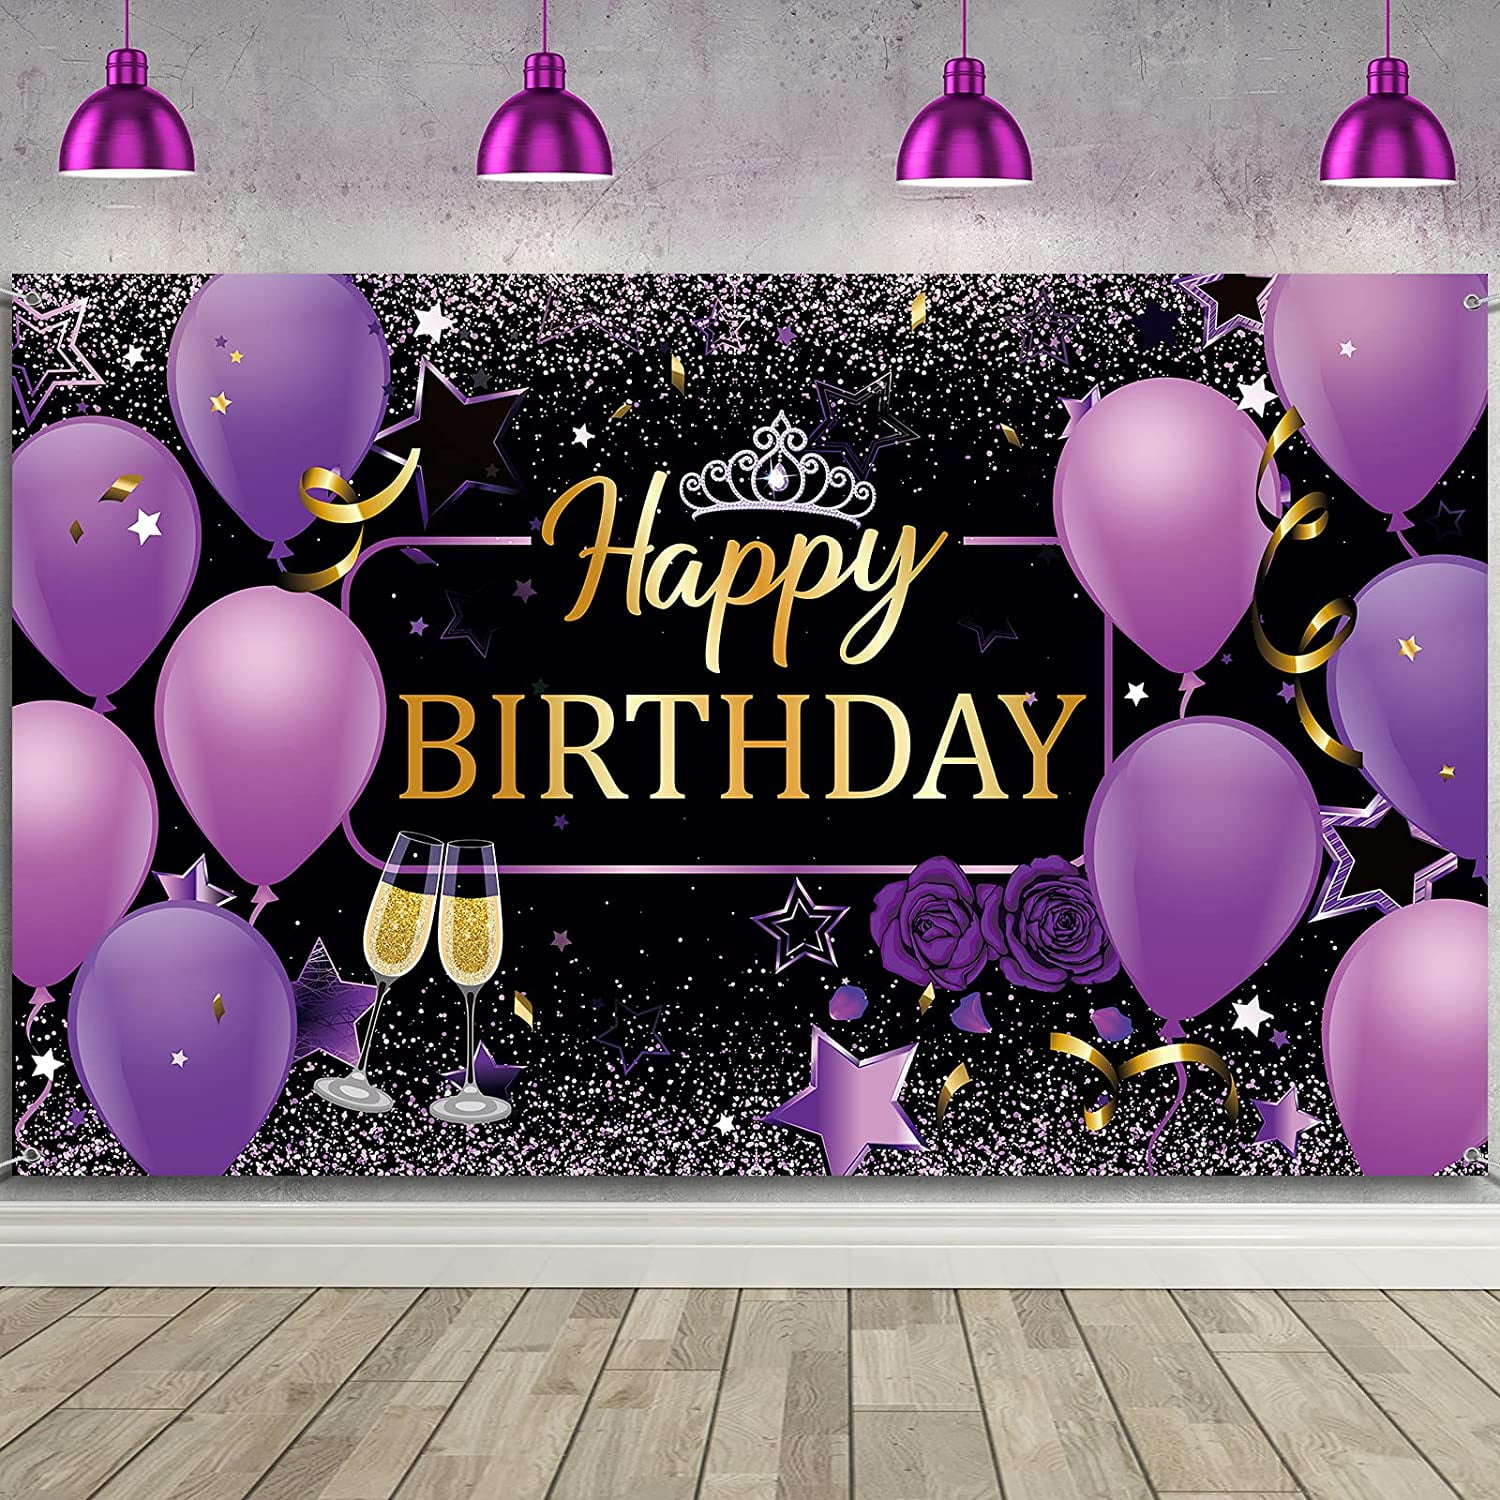 Biển banner trang trí sinh nhật màu tím sẽ khiến buổi tiệc của bạn trở nên đặc biệt hơn bao giờ hết. Điều này chắc chắn sẽ mang lại niềm vui cho người kỷ niệm sinh nhật.